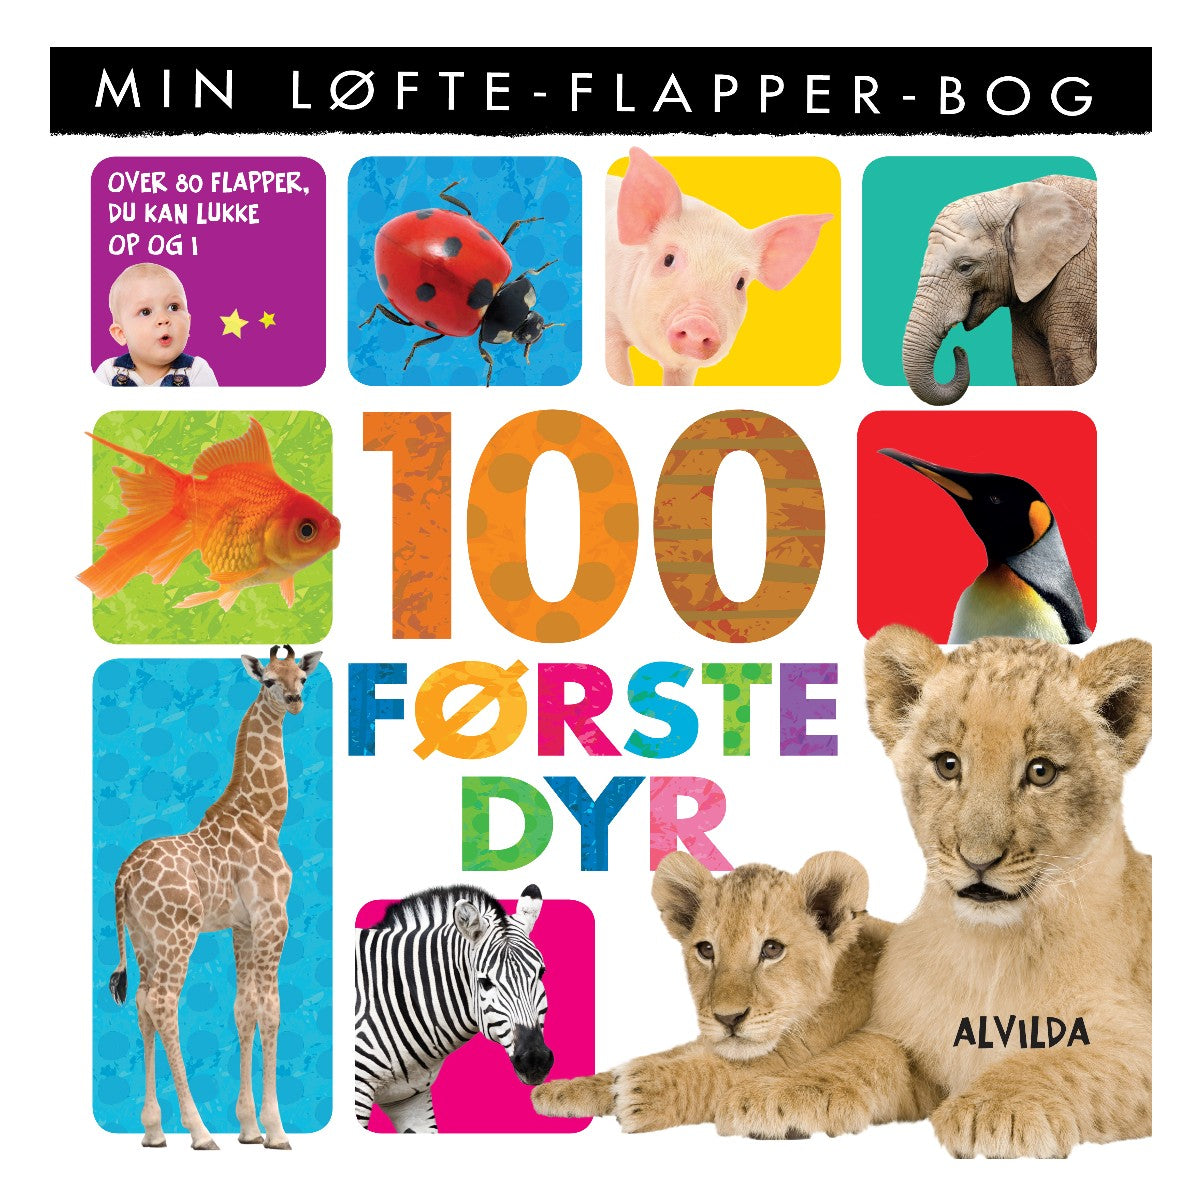 100 Første Dyr, Min Løfte-flapper-bog, Forlaget Alvilda